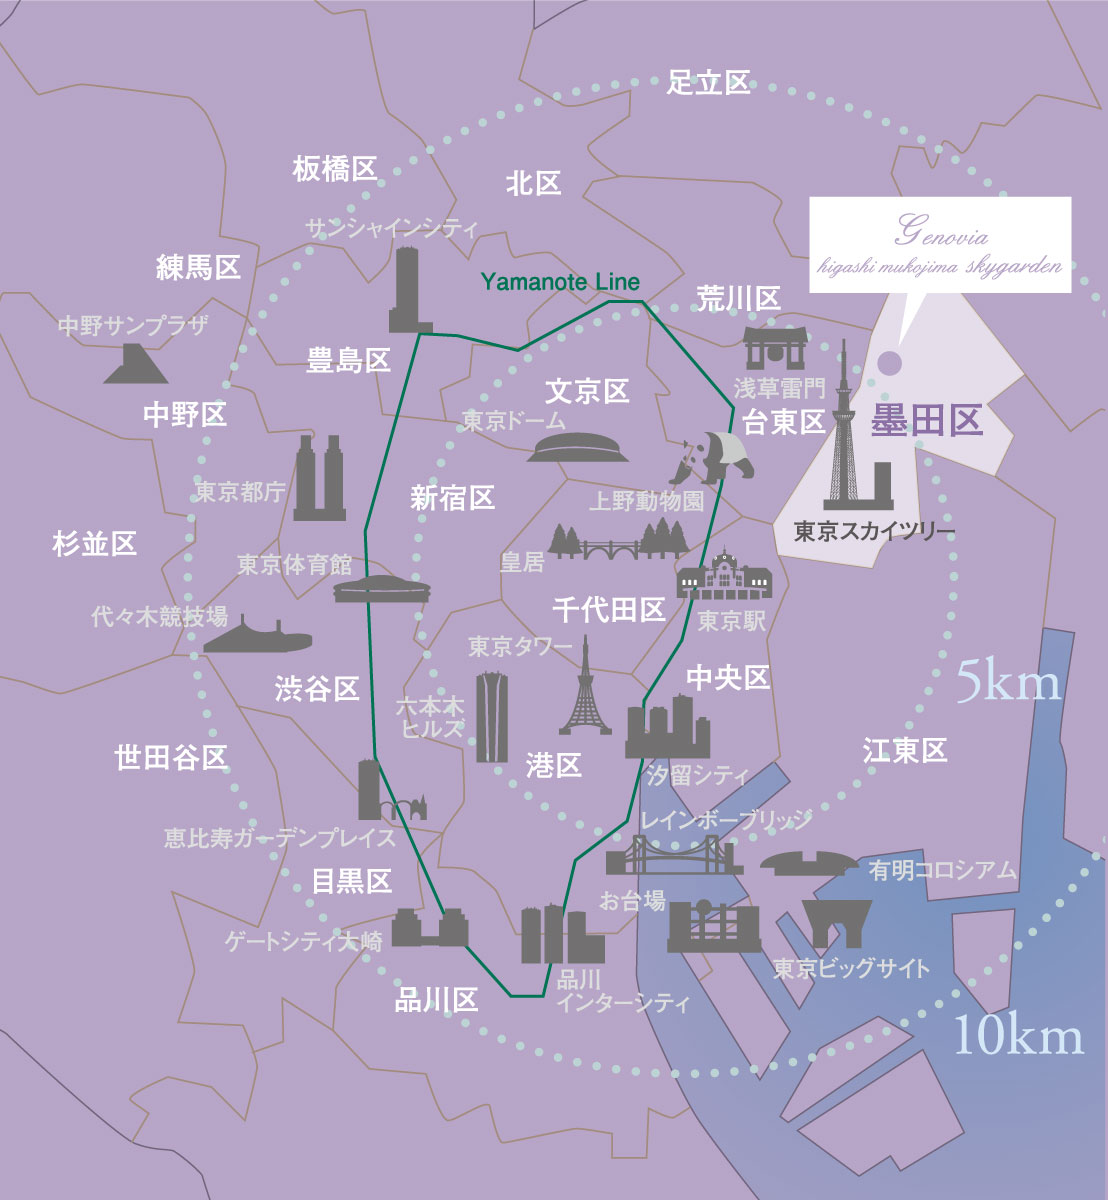 「東京」駅からわずか約6km圏。将来的な資産価値としても期待。